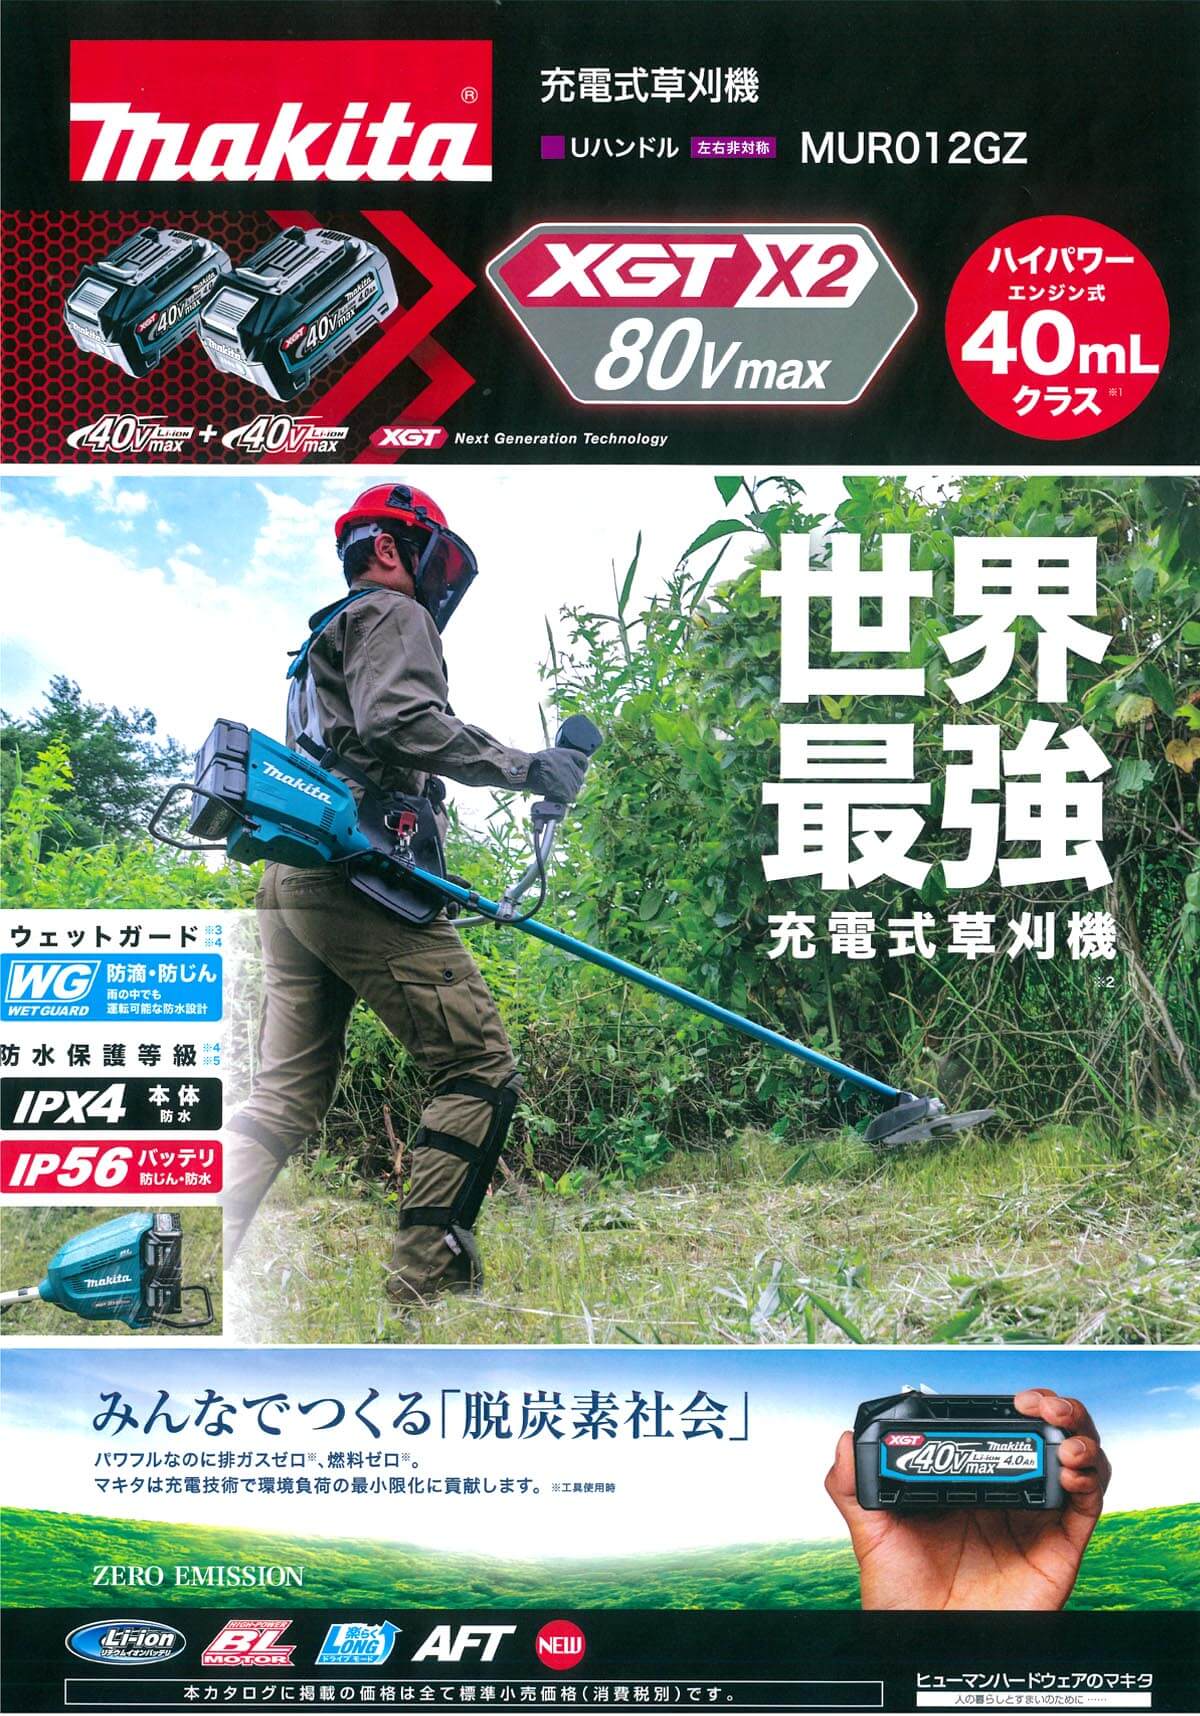 マキタ MUR012GZ 80Vmax充電式草刈機 (本体のみ) ウエダ金物【公式サイト】